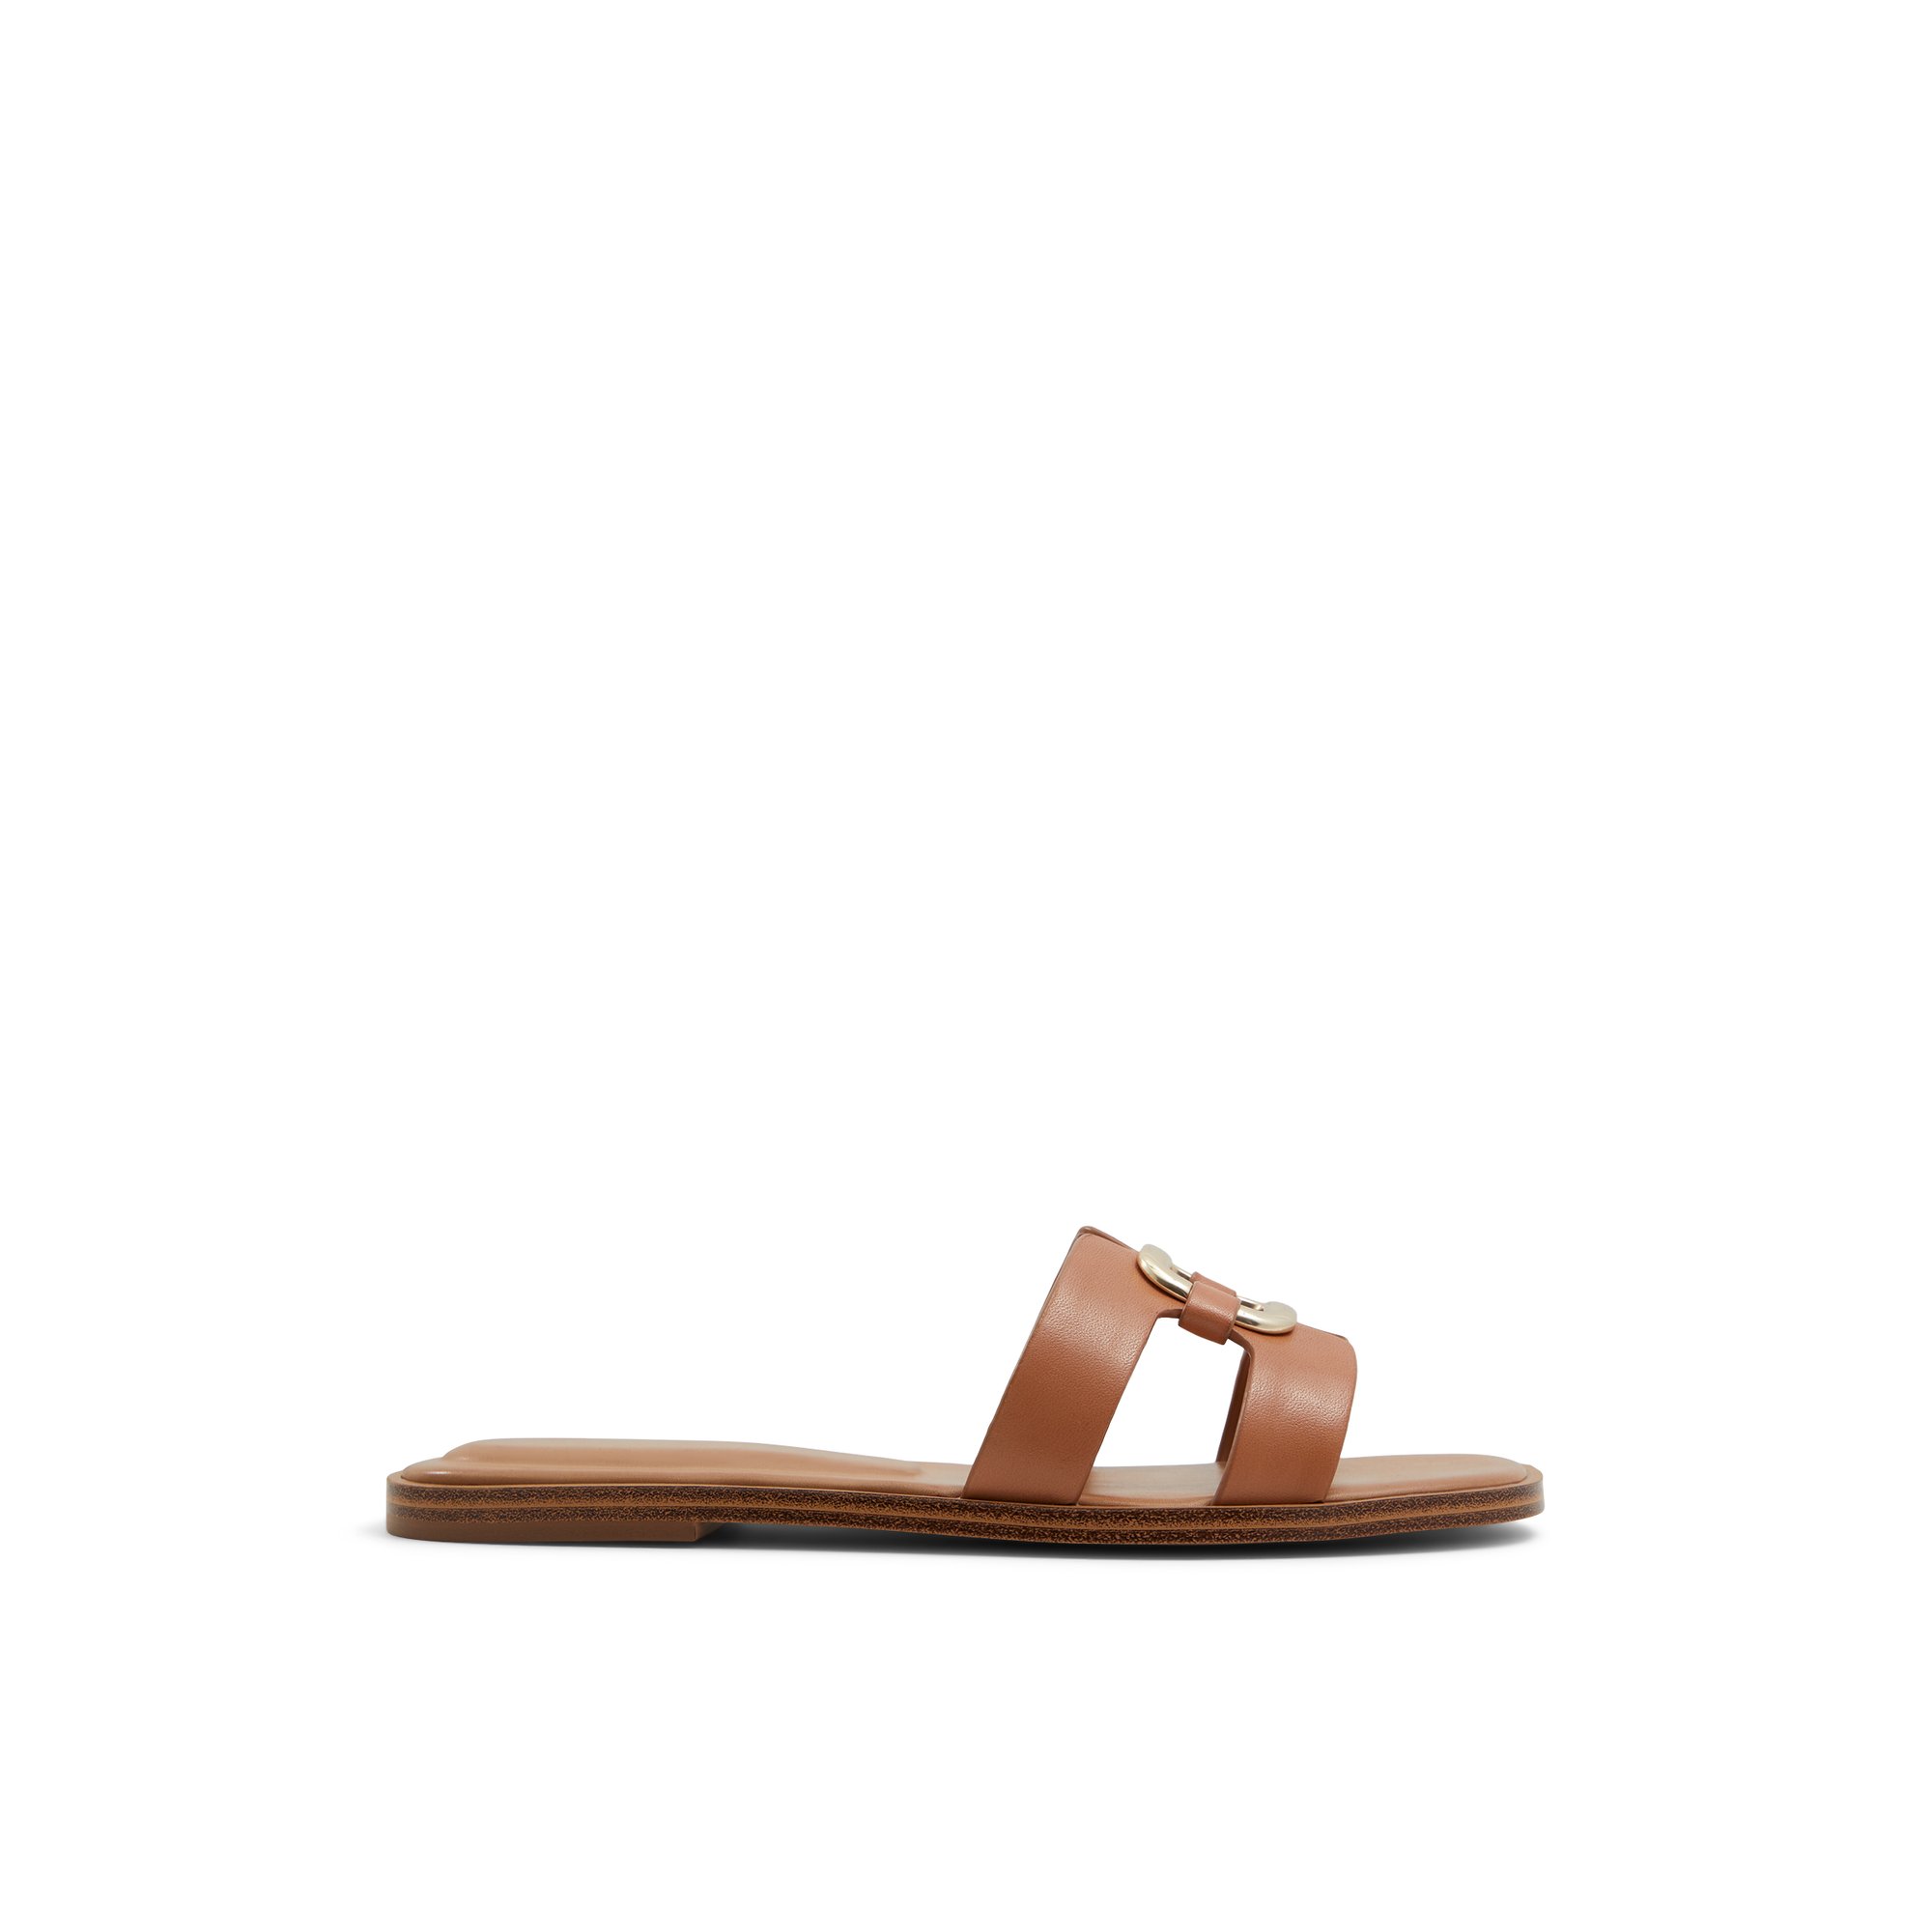 ALDO Nydaokin - Women's Flat Sandals - Beige